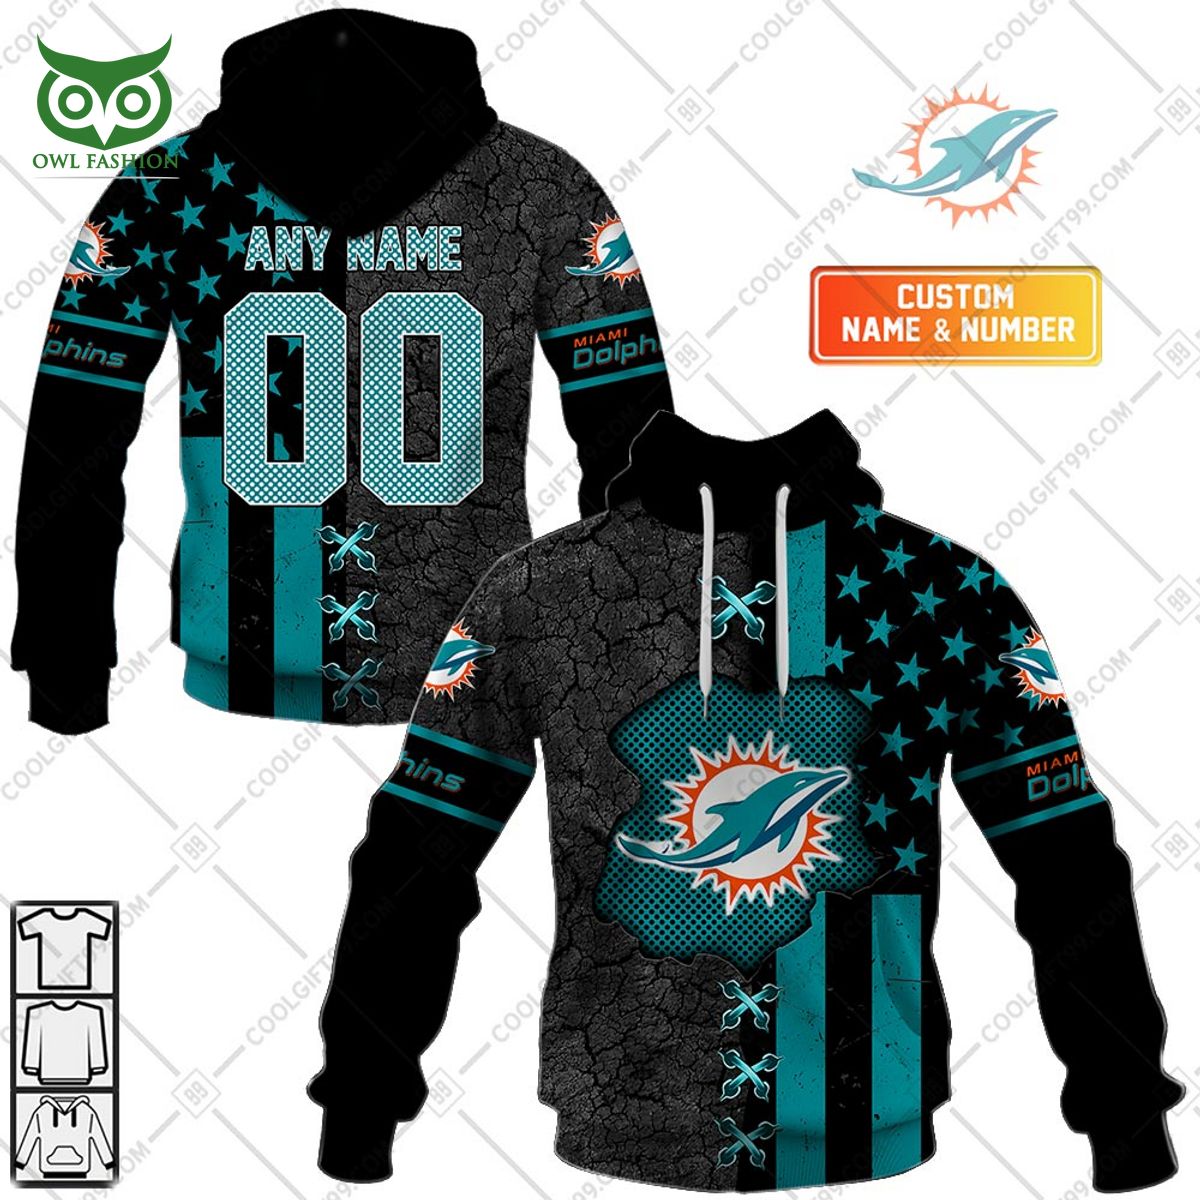 miami dolphins usa flag nfl custom printed hoodie shirt 1 484Fd.jpg